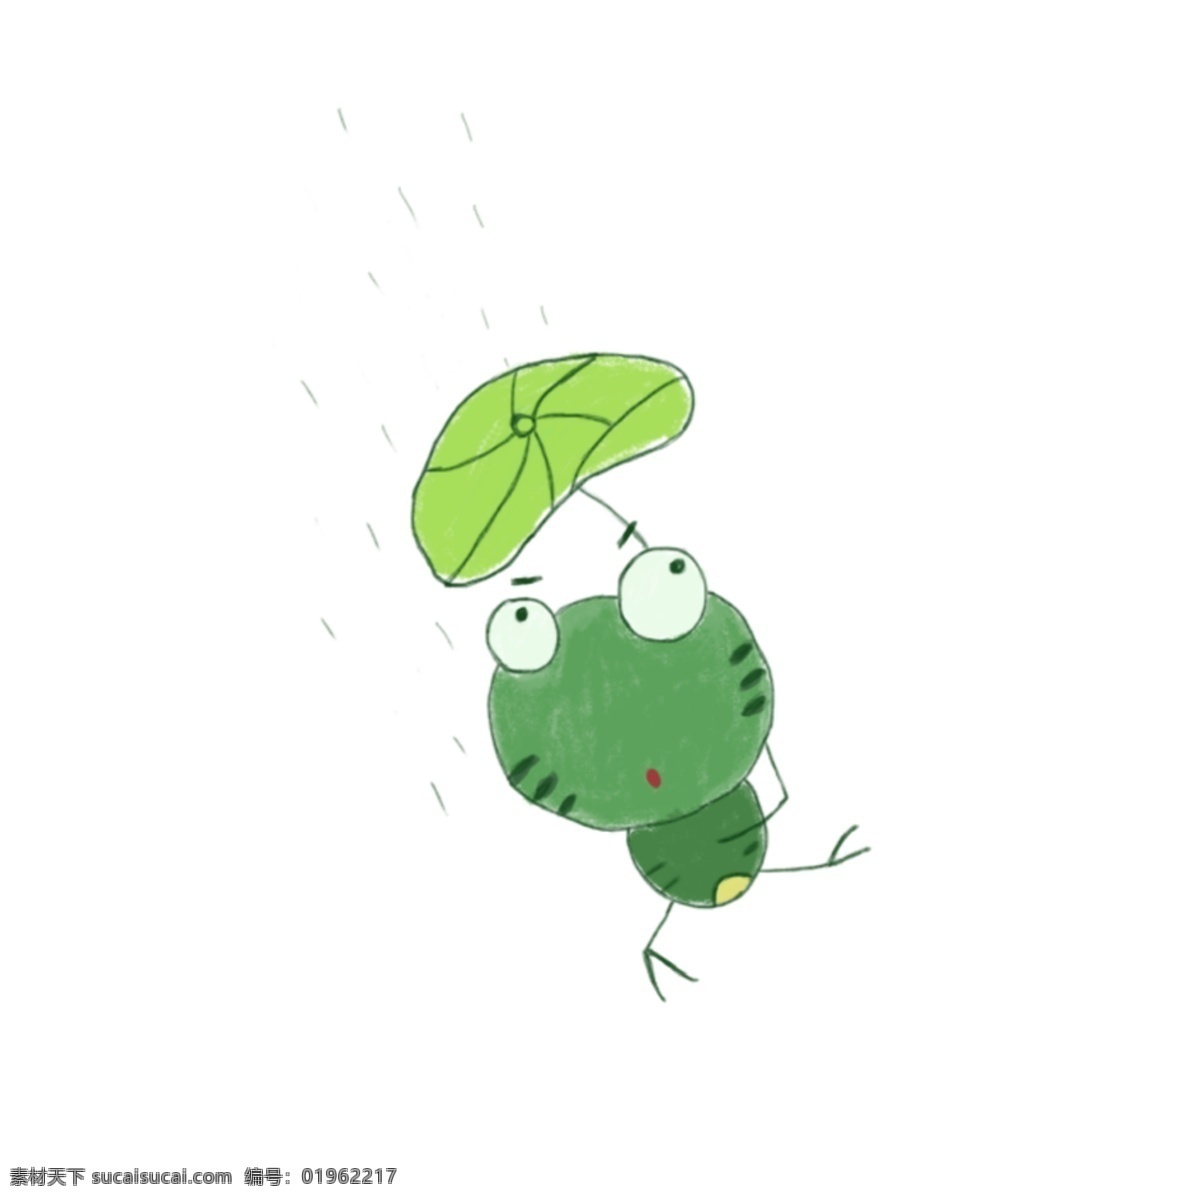 下雨天 青蛙王子 简笔画 青蛙 绿色青蛙 下雨了 可爱的青蛙 荷叶 欢快的青蛙 春天 小清新